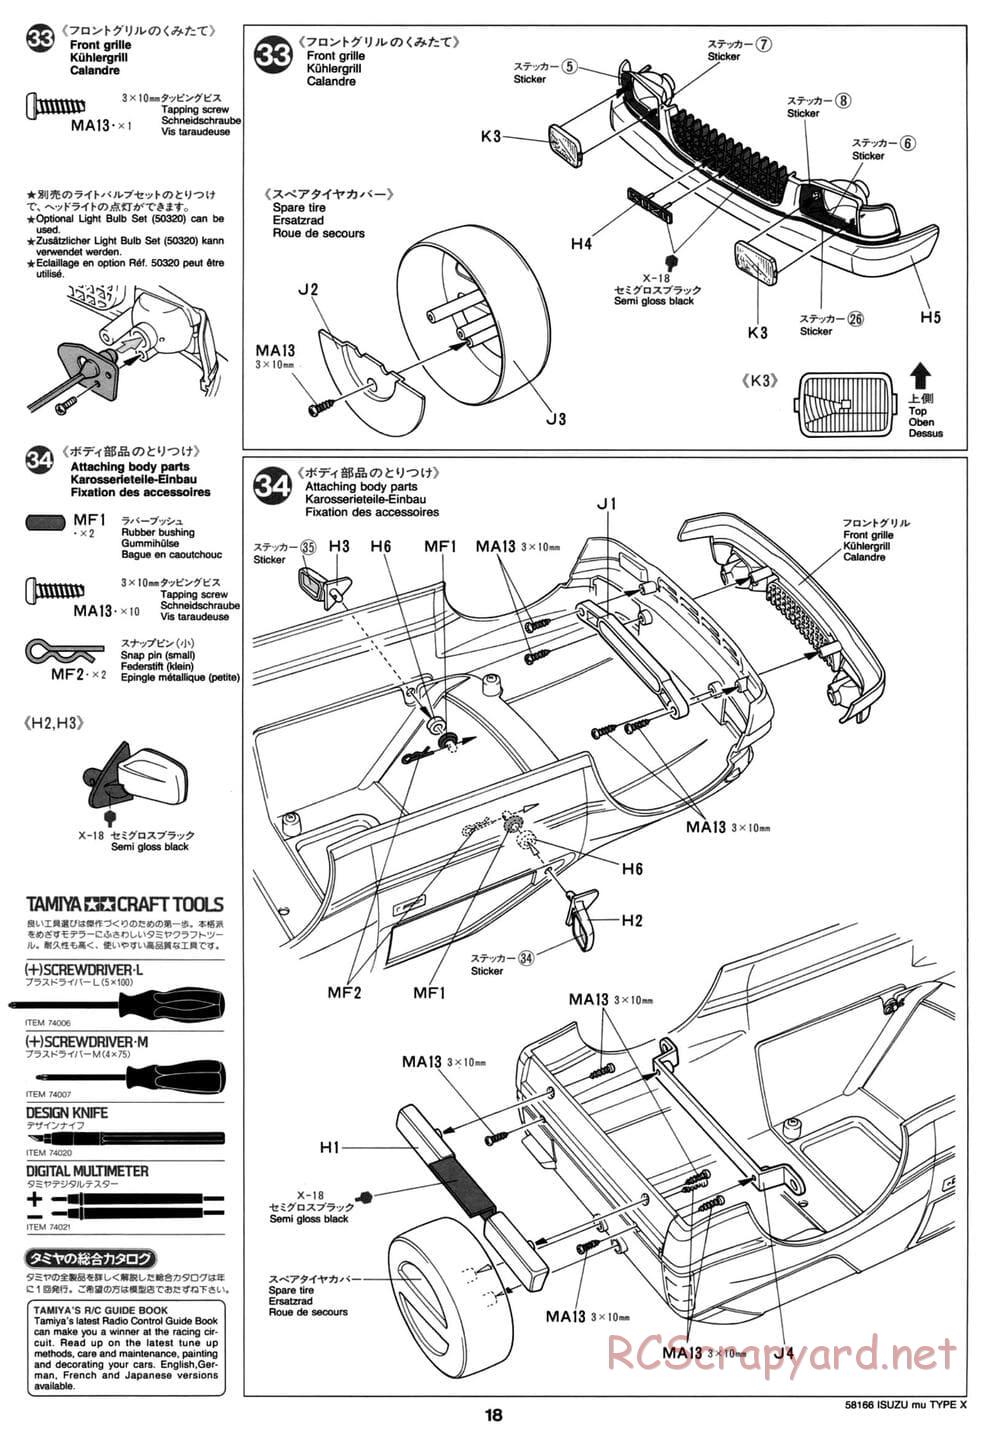 Tamiya - Isuzu Mu Type X - CC-01 Chassis - Manual - Page 18